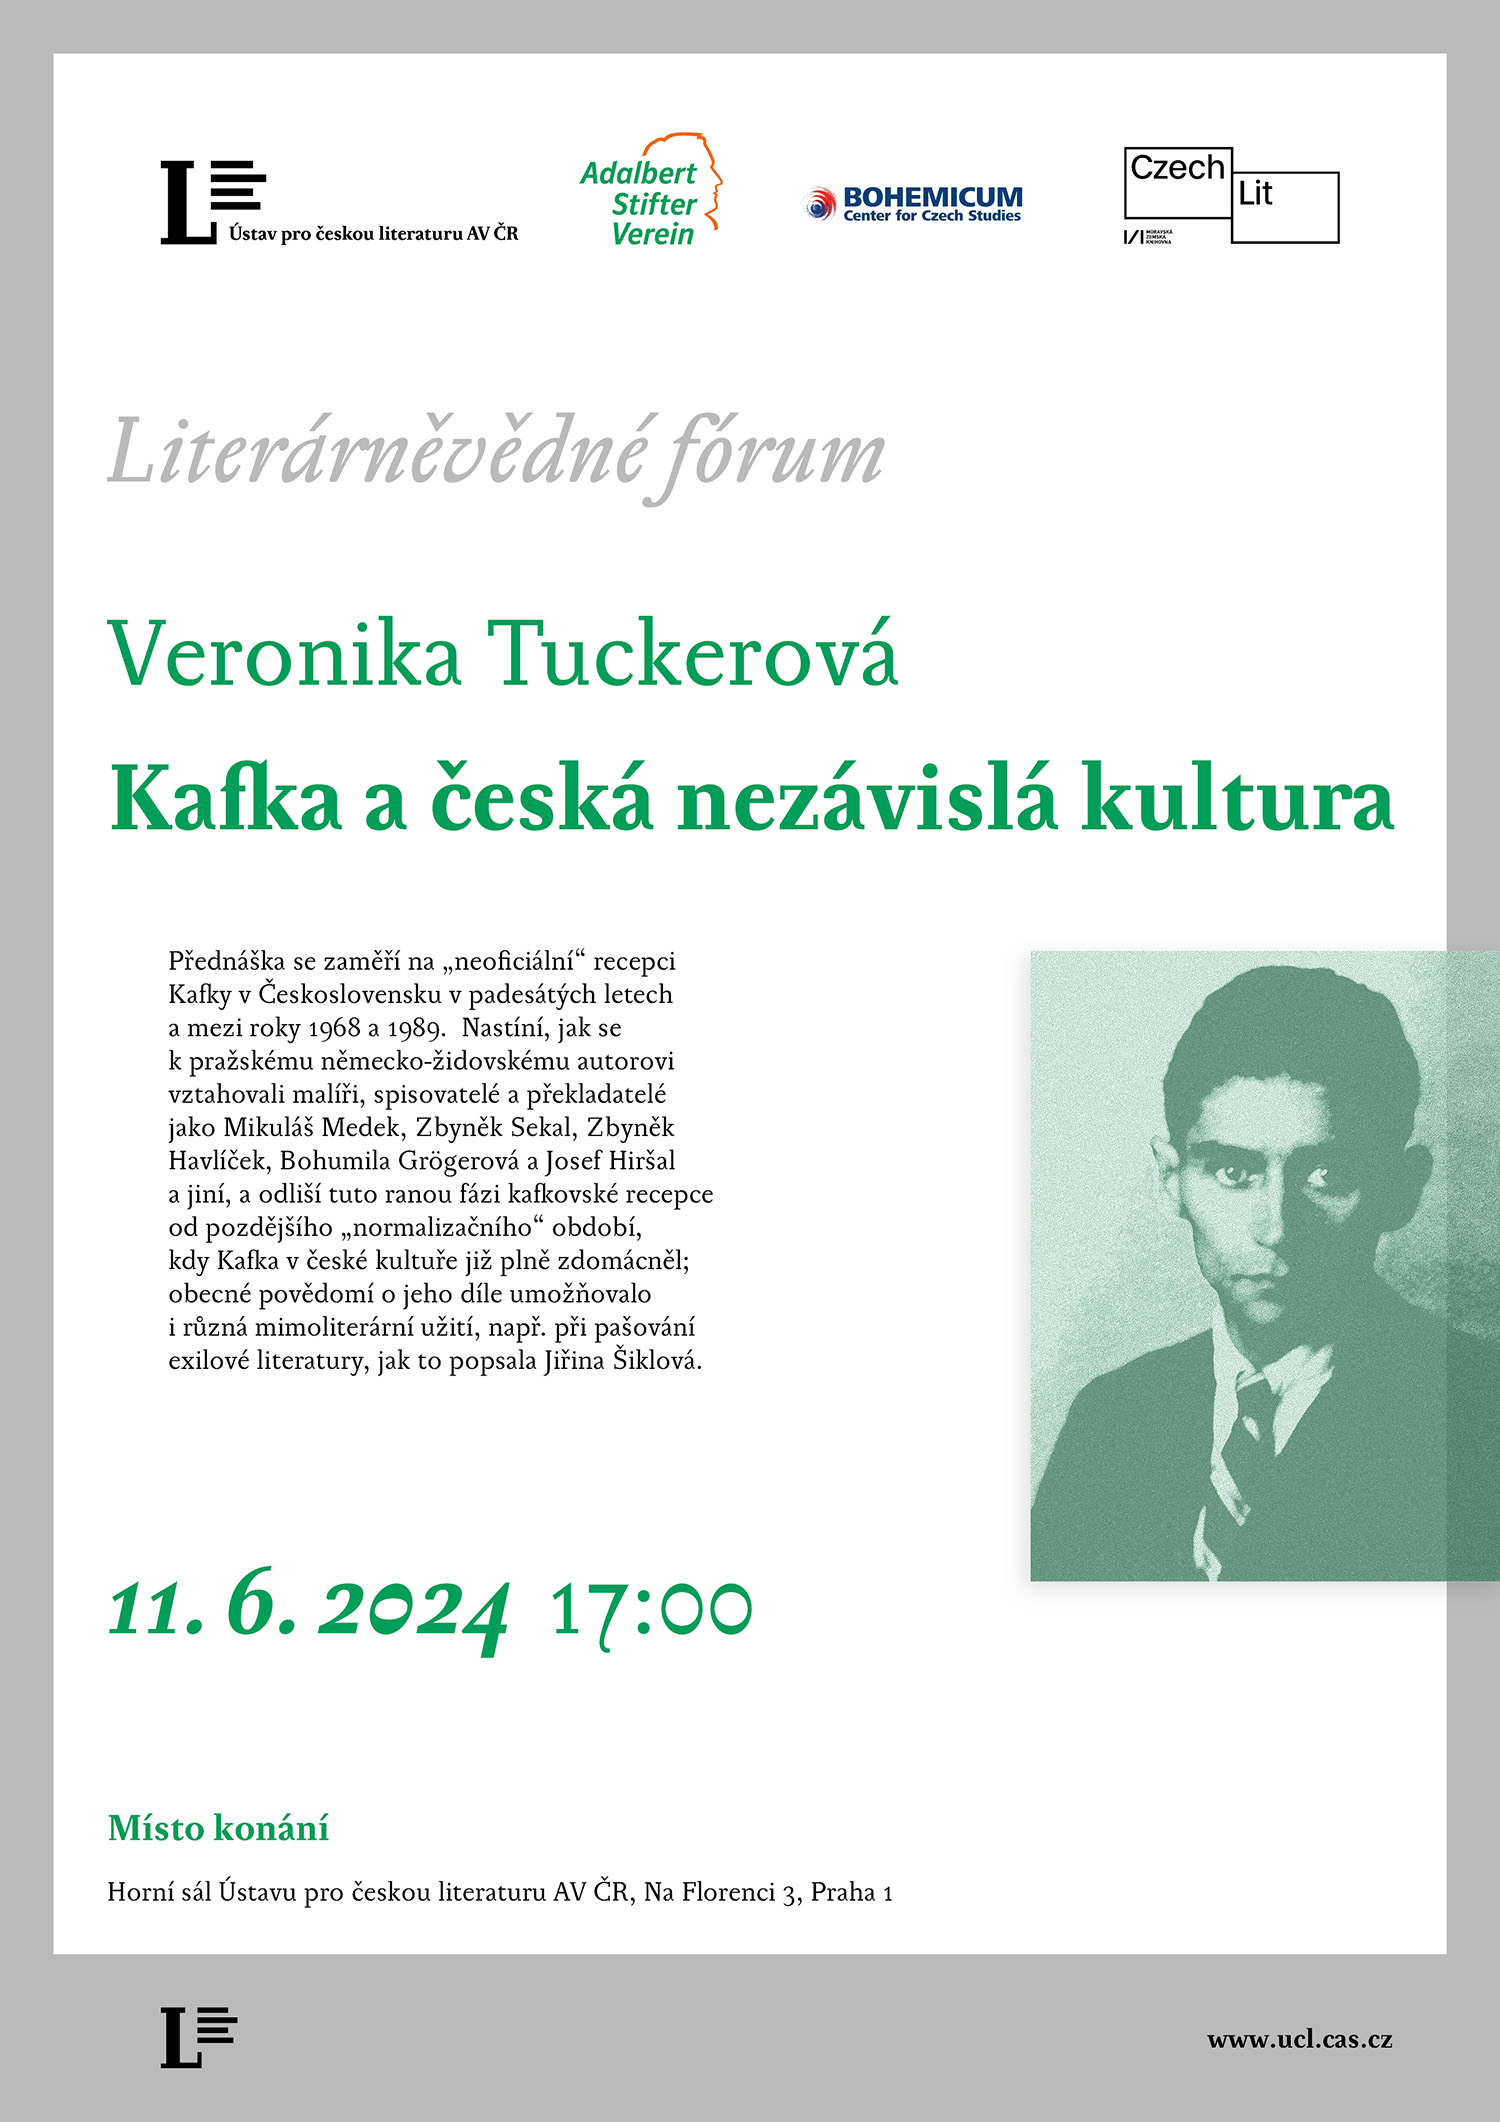 pozvánka na přednášku Veroniky Tuckerové Kafka a česká nezávislá kultura (11. 6. 2024)